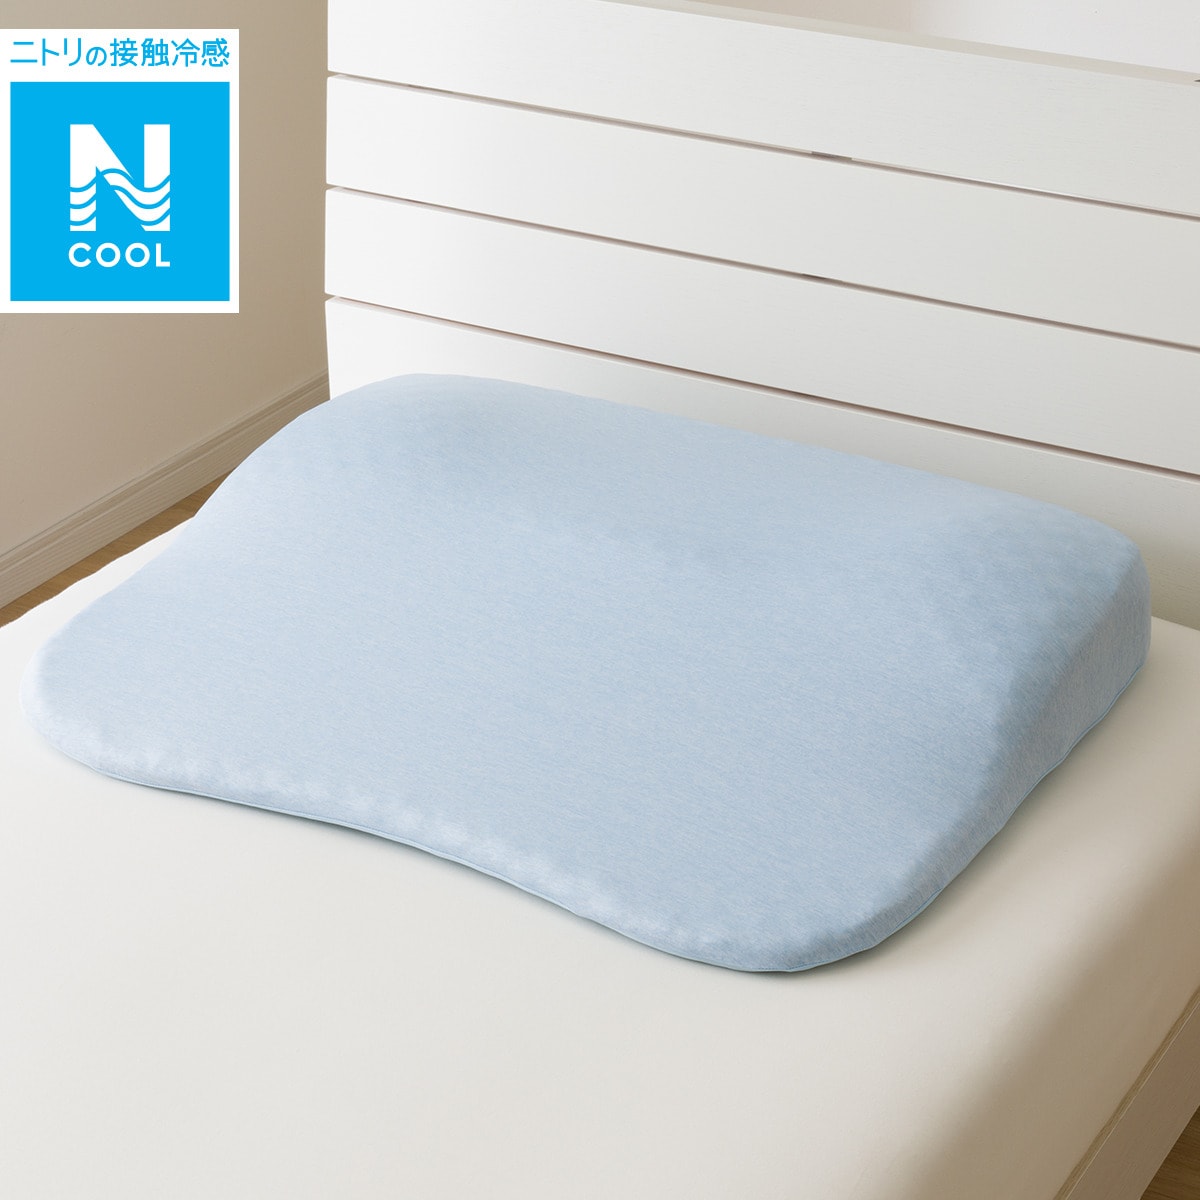 肩・首・背中も支える枕専用 枕カバー(Nクール P2407)